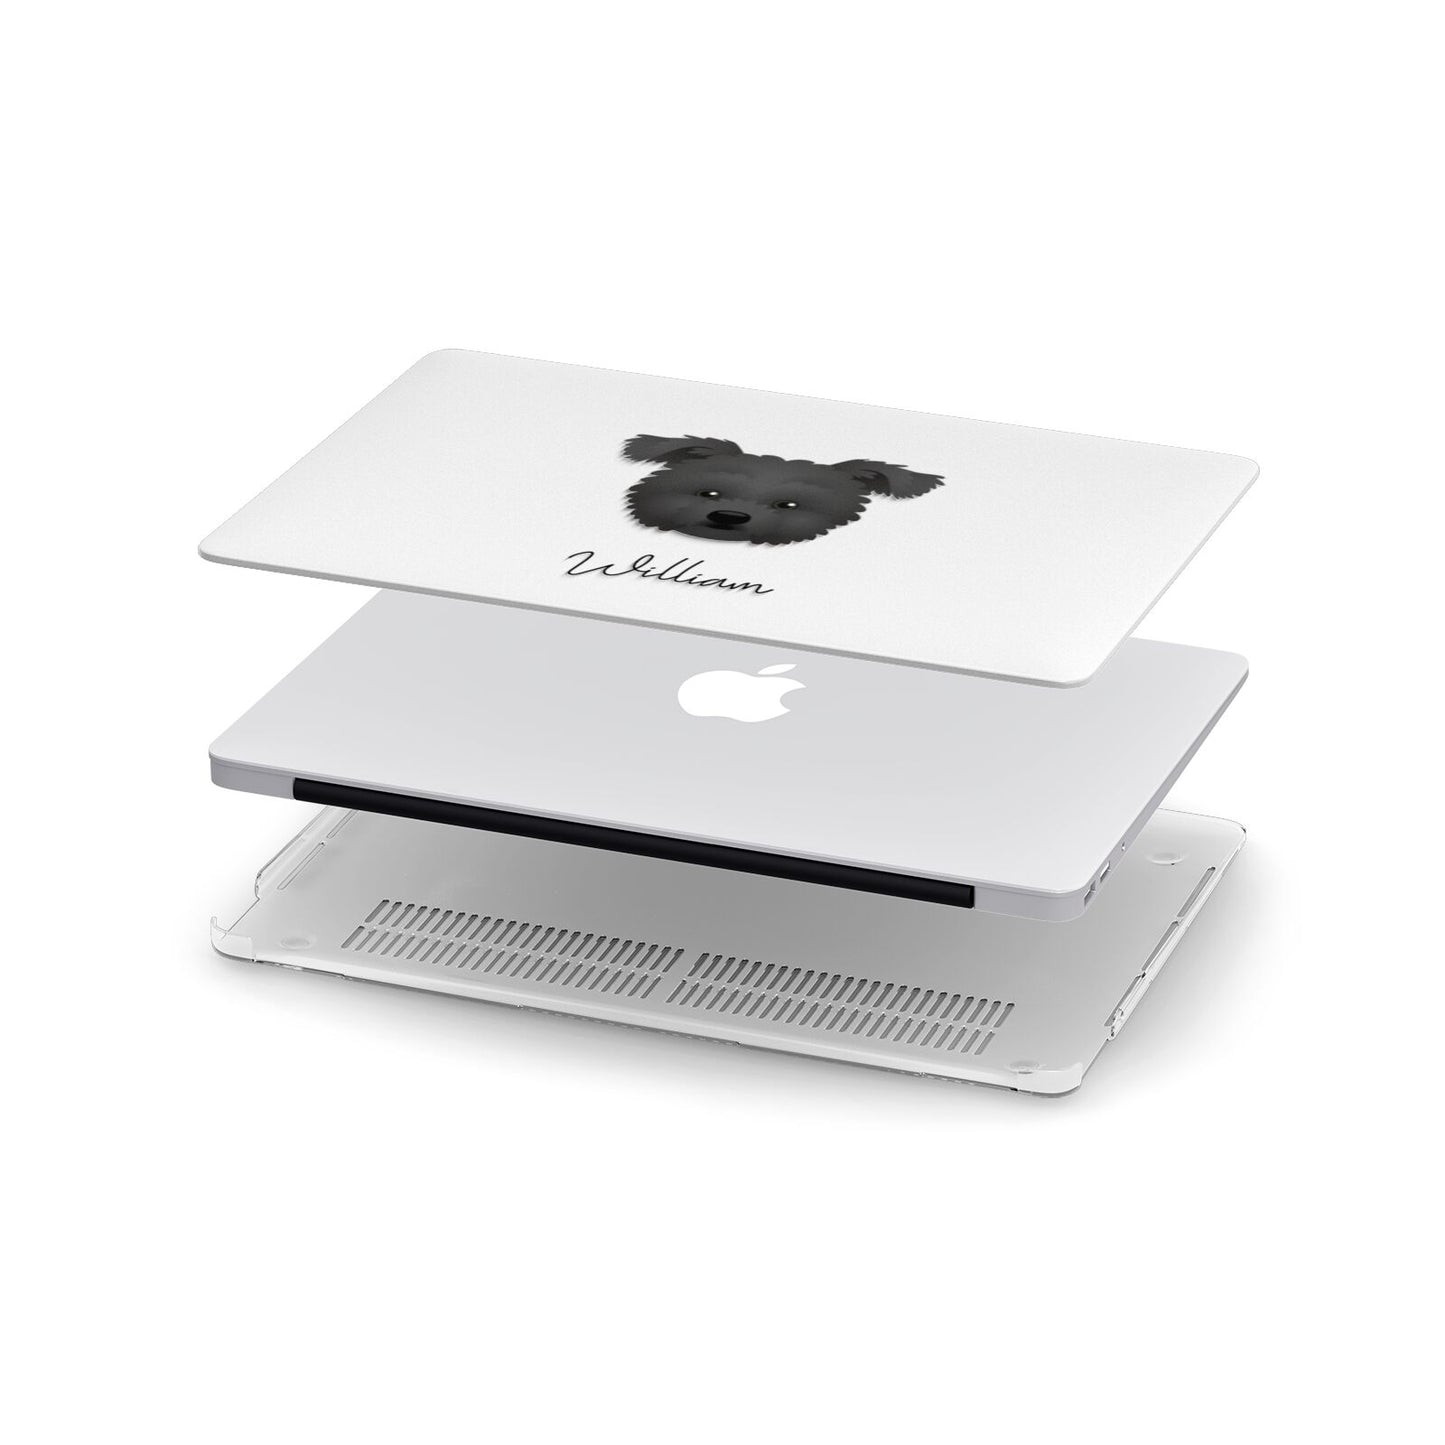 Pomapoo Personalised Apple MacBook Case in Detail